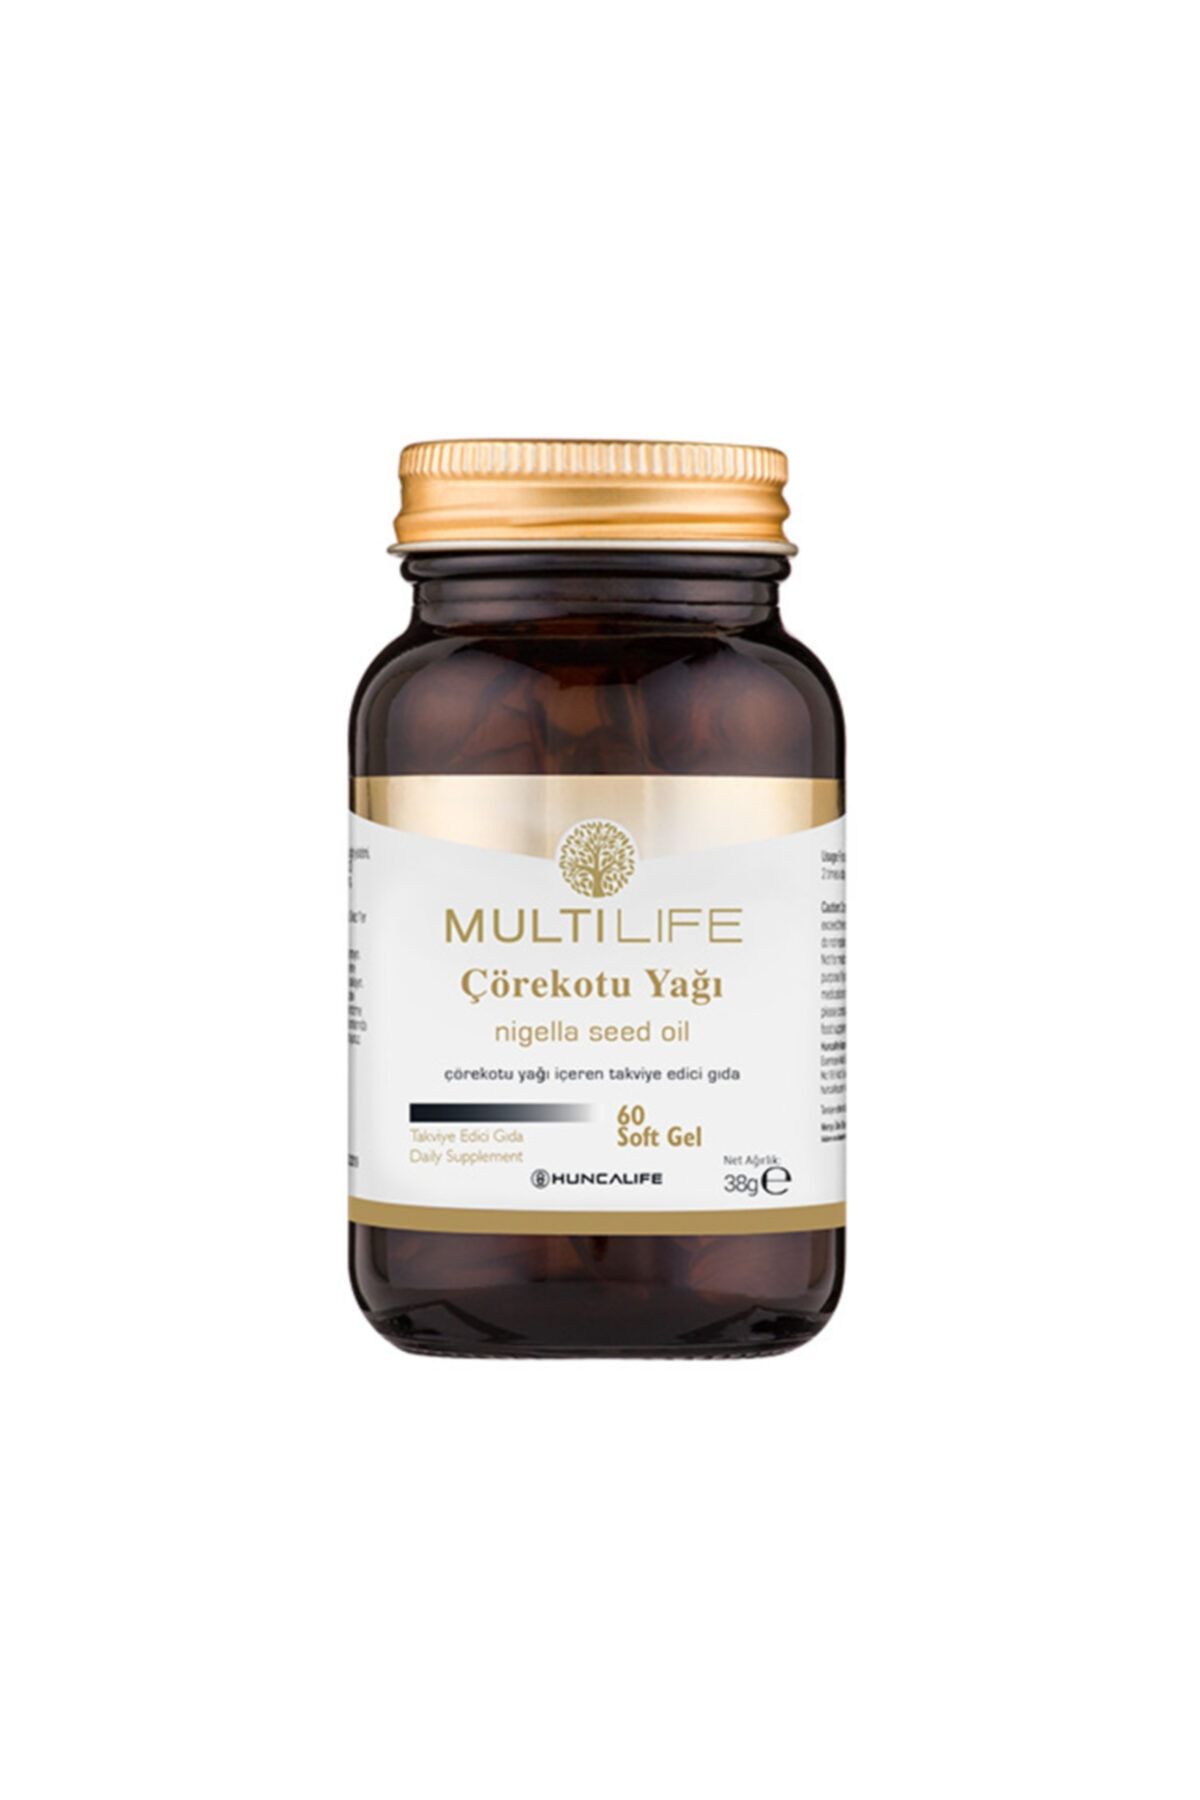 Huncalife Multilife Çörekotu Yağı Içeren Takviye Edici Gıda 60 Soft Gel